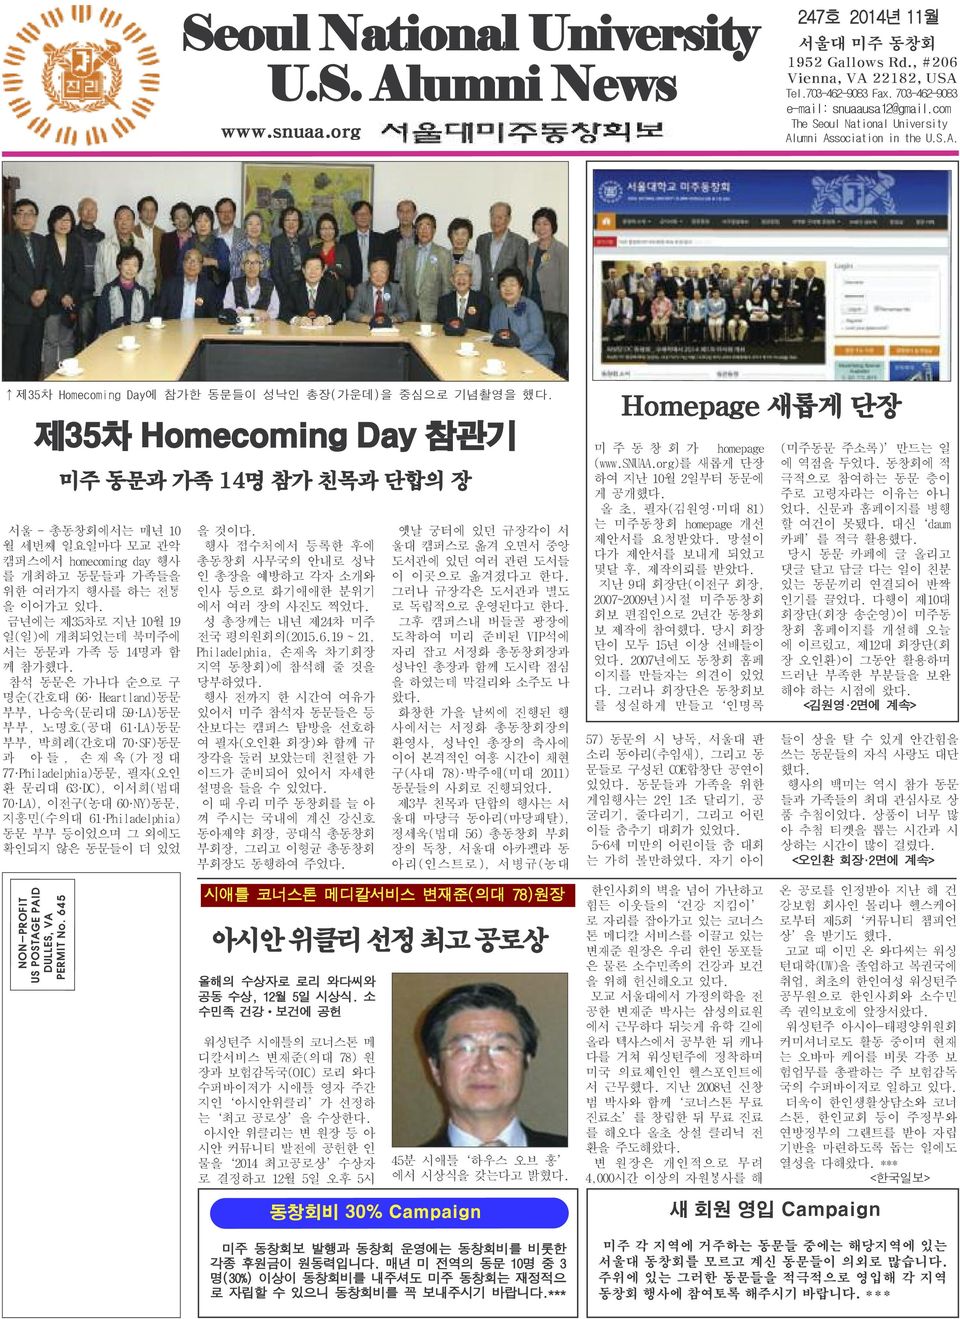 제35차 Homecoming Day 참관기 미주 동문과 가족 14명 참가 친목과 단합의 장 서울 - 총동창회에서는 매년 10 월 세번째 일요일마다 모교 관악 캠퍼스에서 homecoming day 행사 를 개최하고 동문들과 가족들을 위한 여러가지 행사를 하는 전통 을 이어가고 있다.